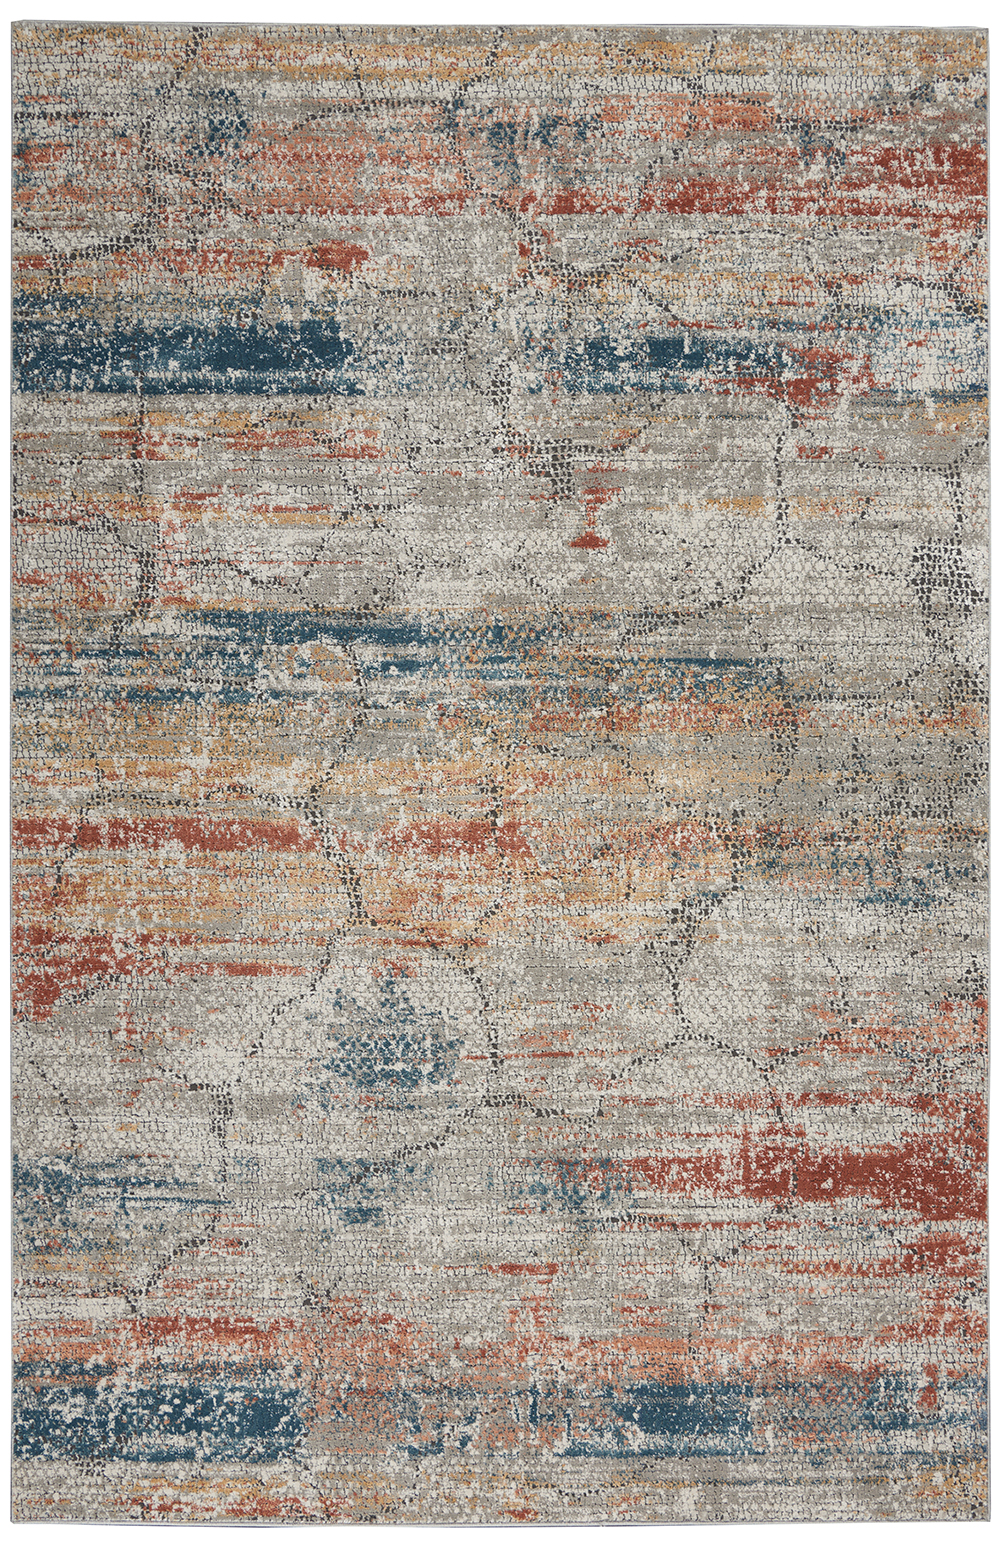 Nourison Rugs - Rustic Textures Rectanglular RUS11 Rug in Multicolour - 2.2m x 1.6m